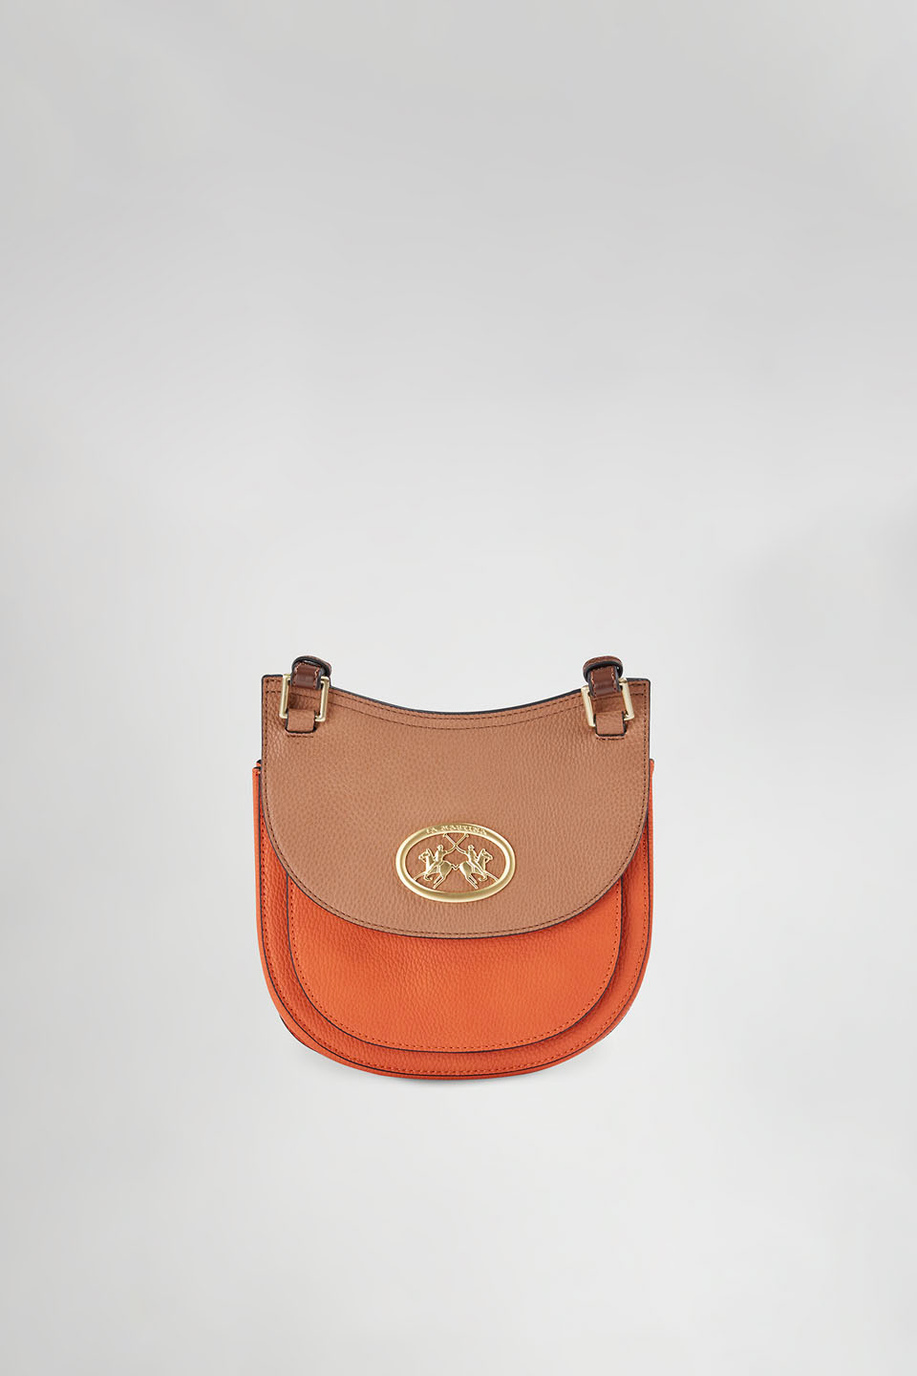 Tasche aus PU-Gewebe - Taschen | La Martina - Official Online Shop